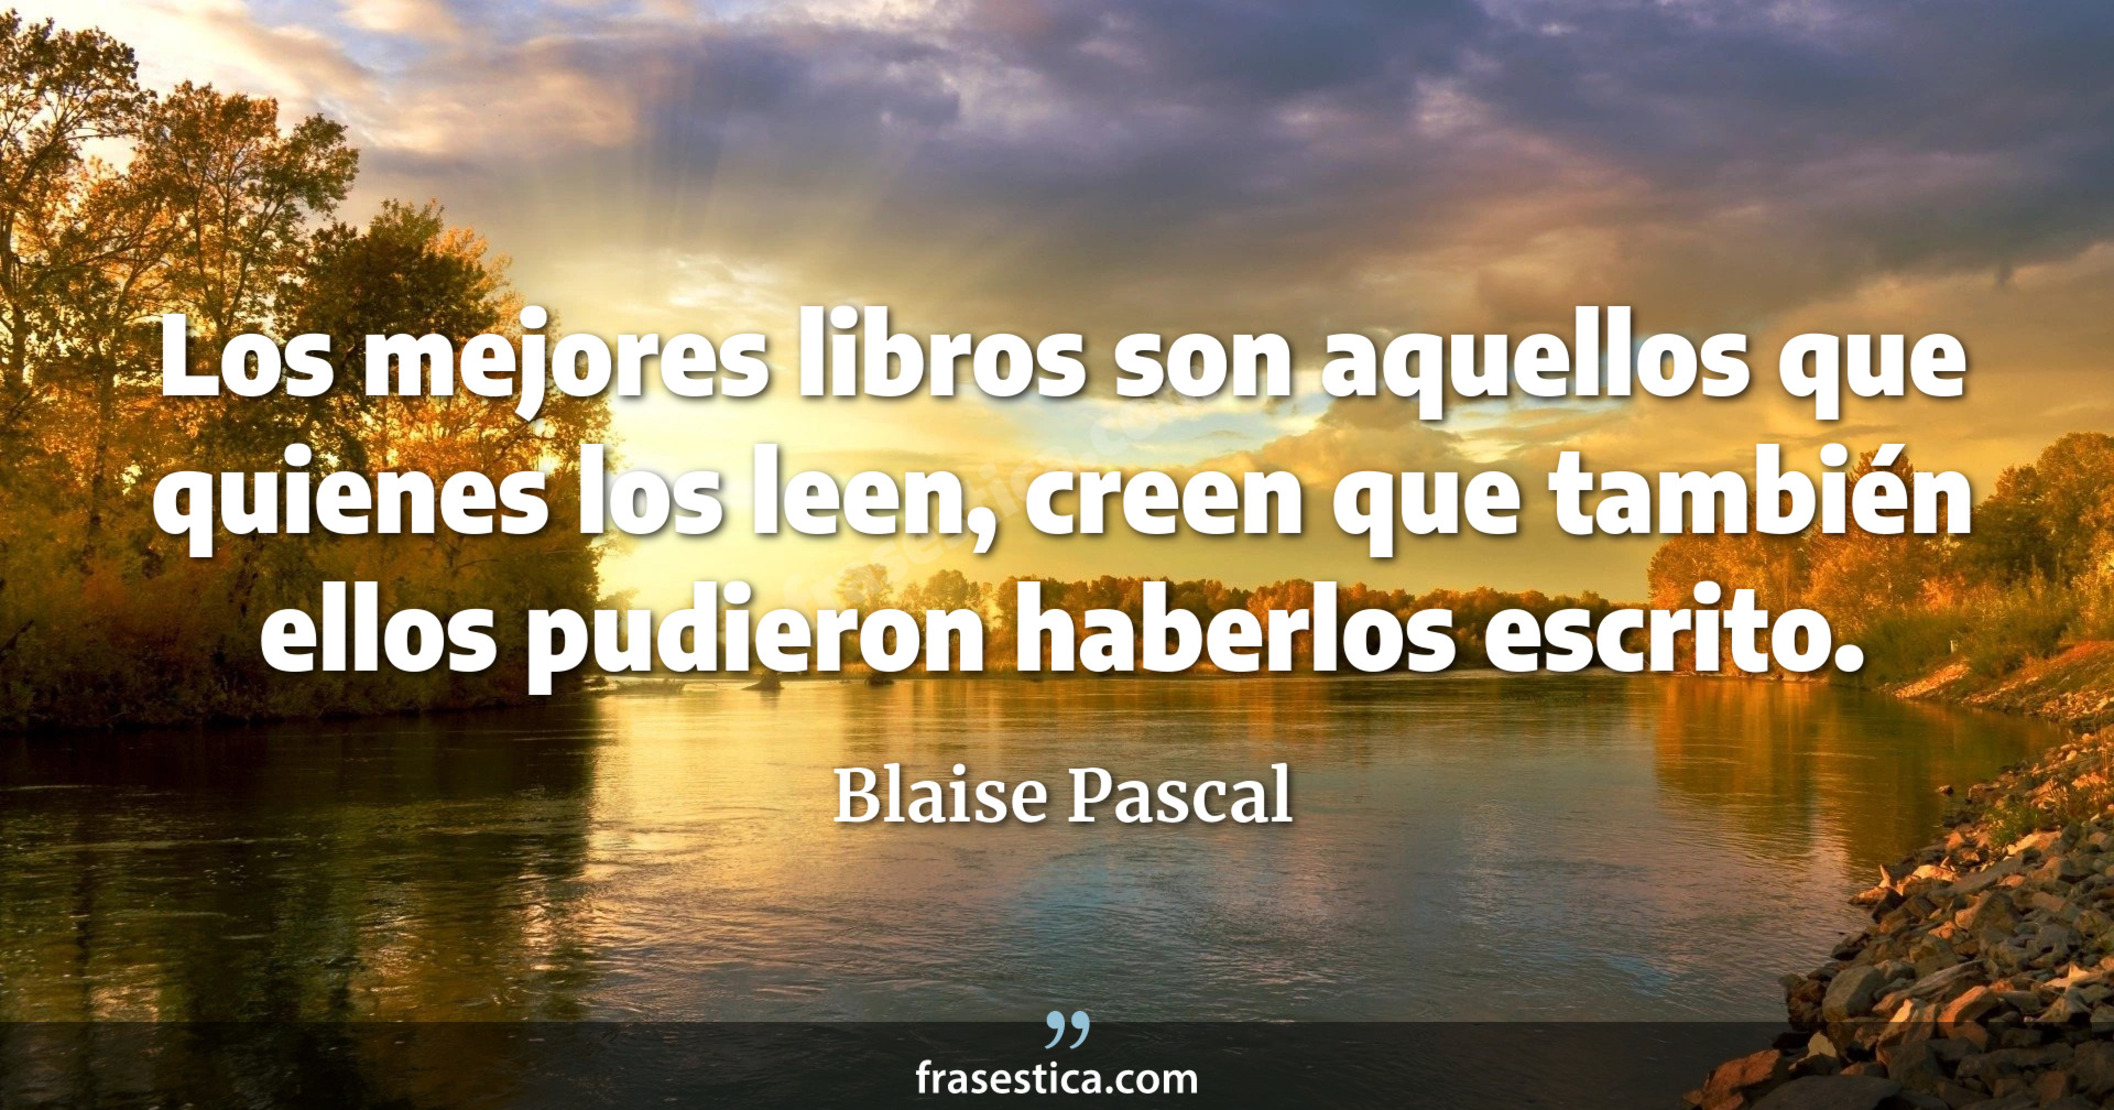 Los mejores libros son aquellos que quienes los leen, creen que también ellos pudieron haberlos escrito. - Blaise Pascal